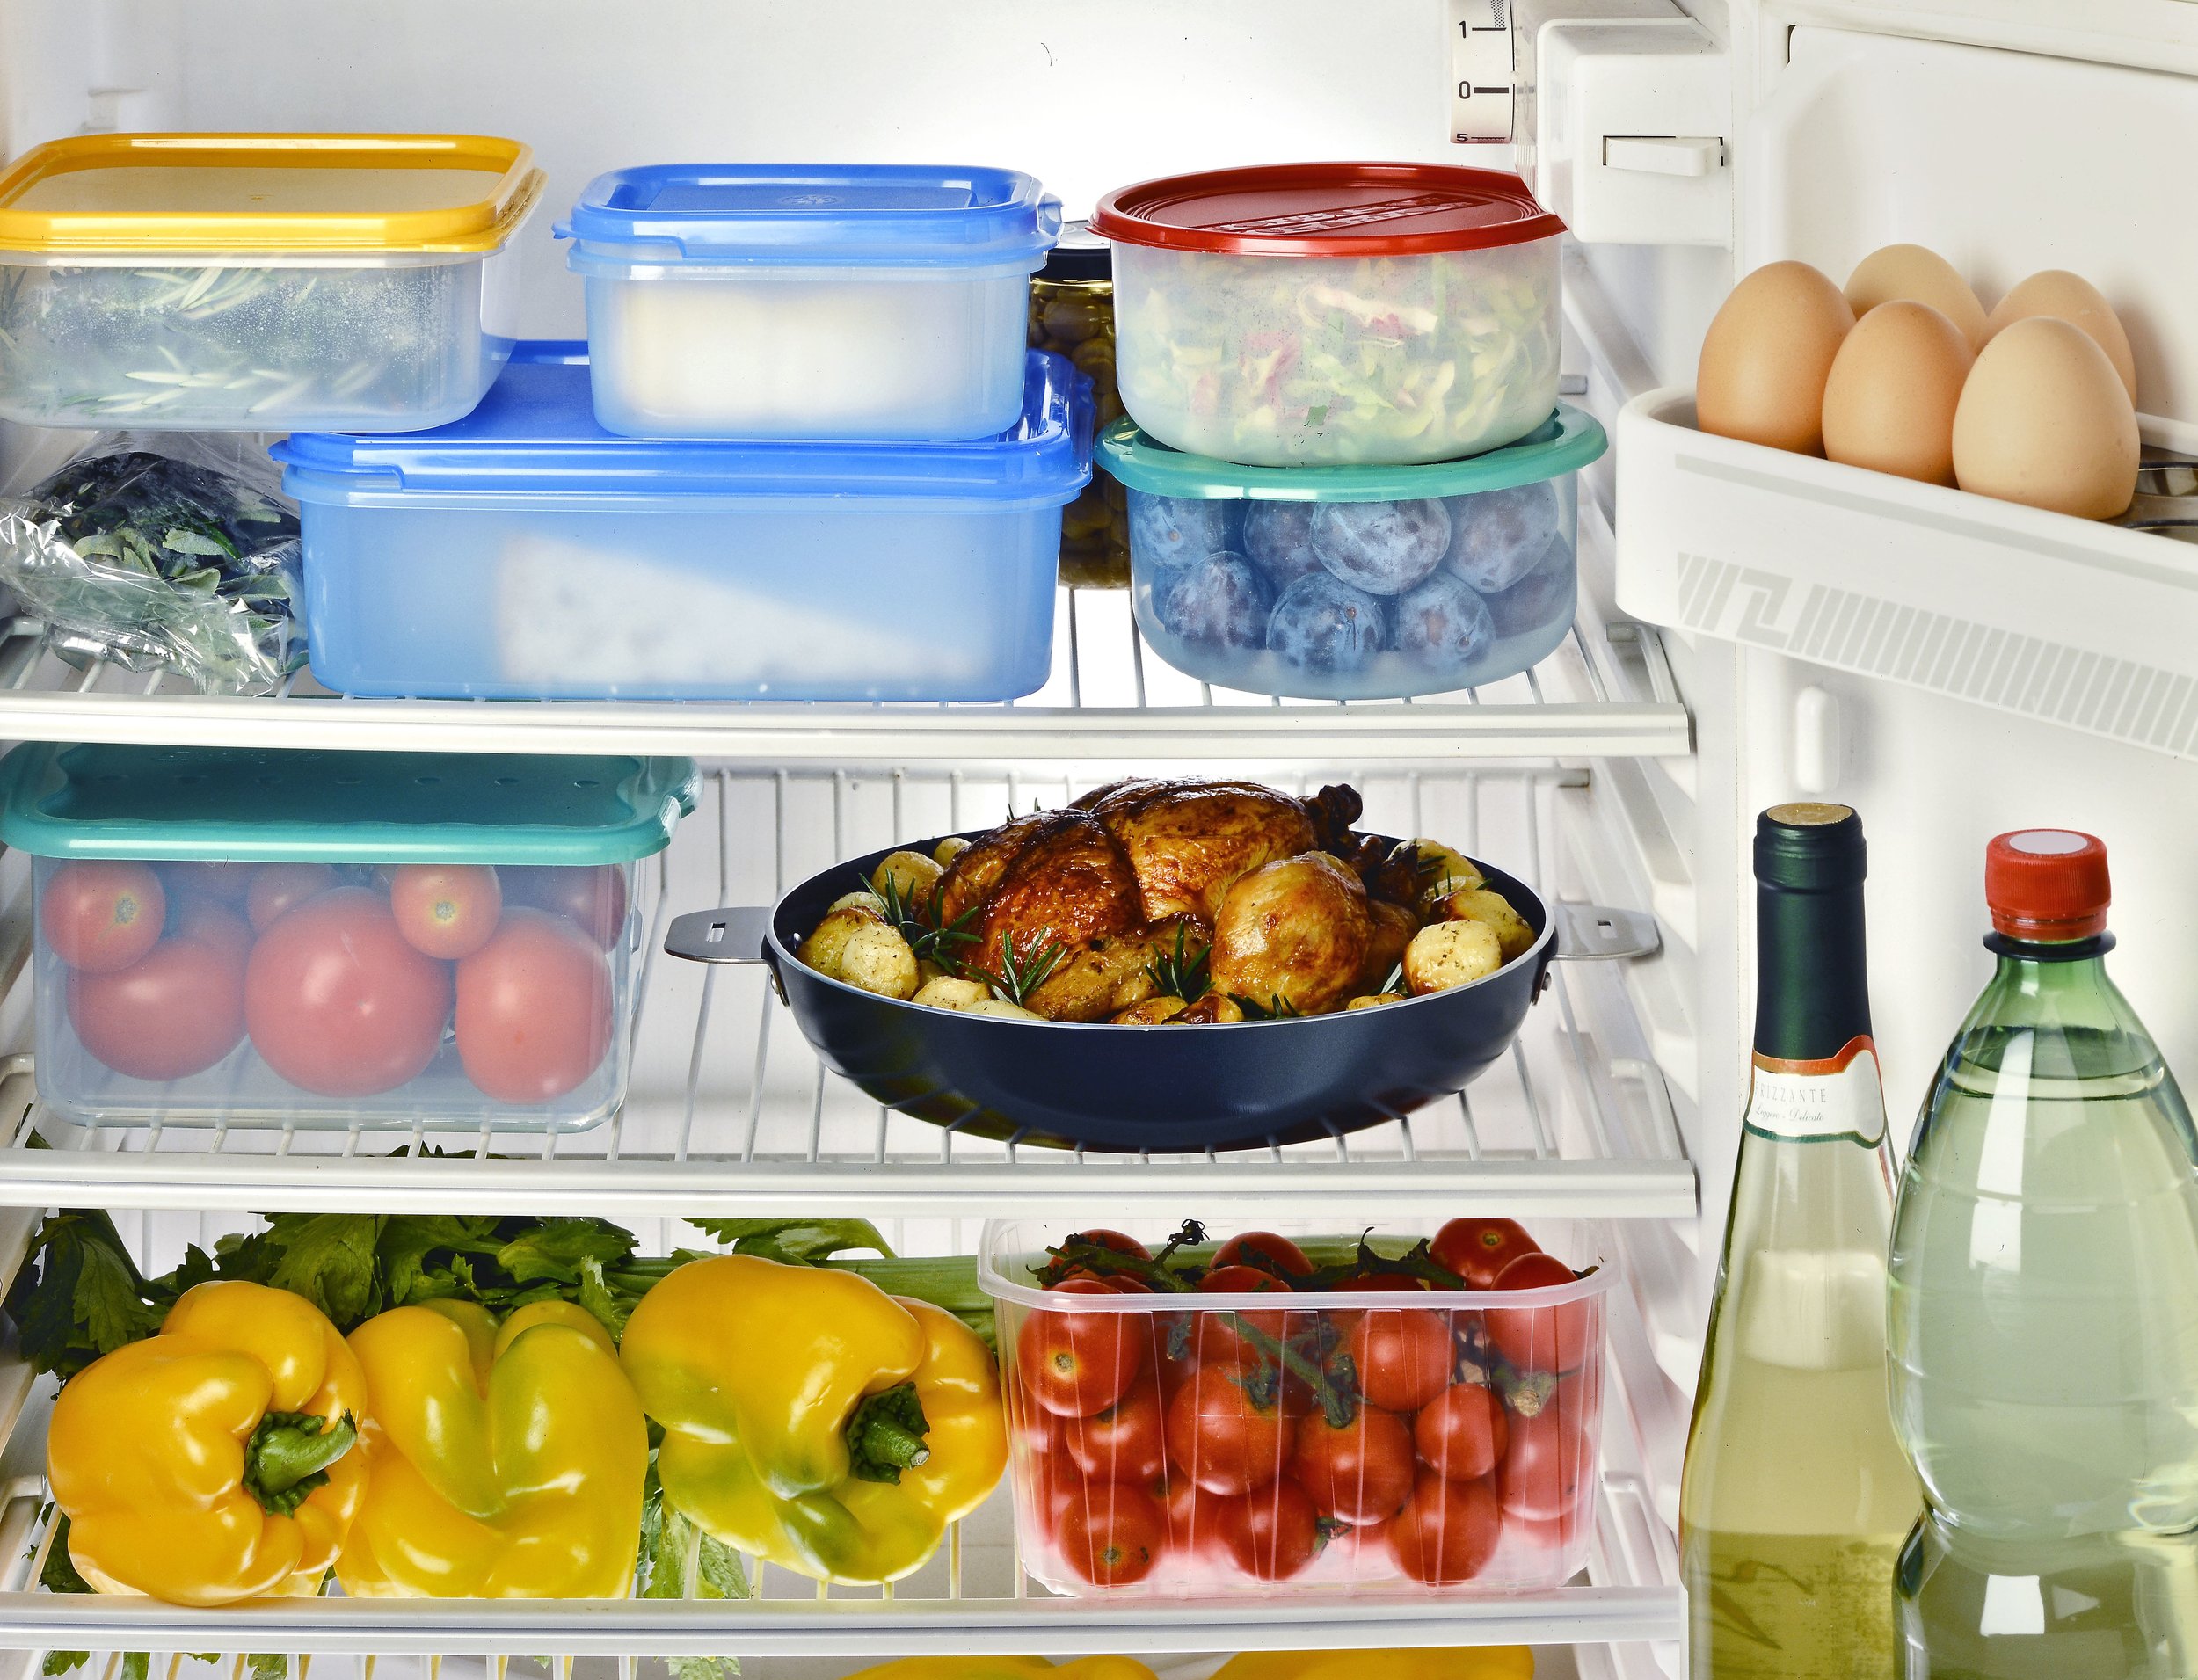 Организация хранения готовой продукции. Проддуктыв холодильнике. Холодильник с продуктами. Хранение продуктов. Холодильник с едой.